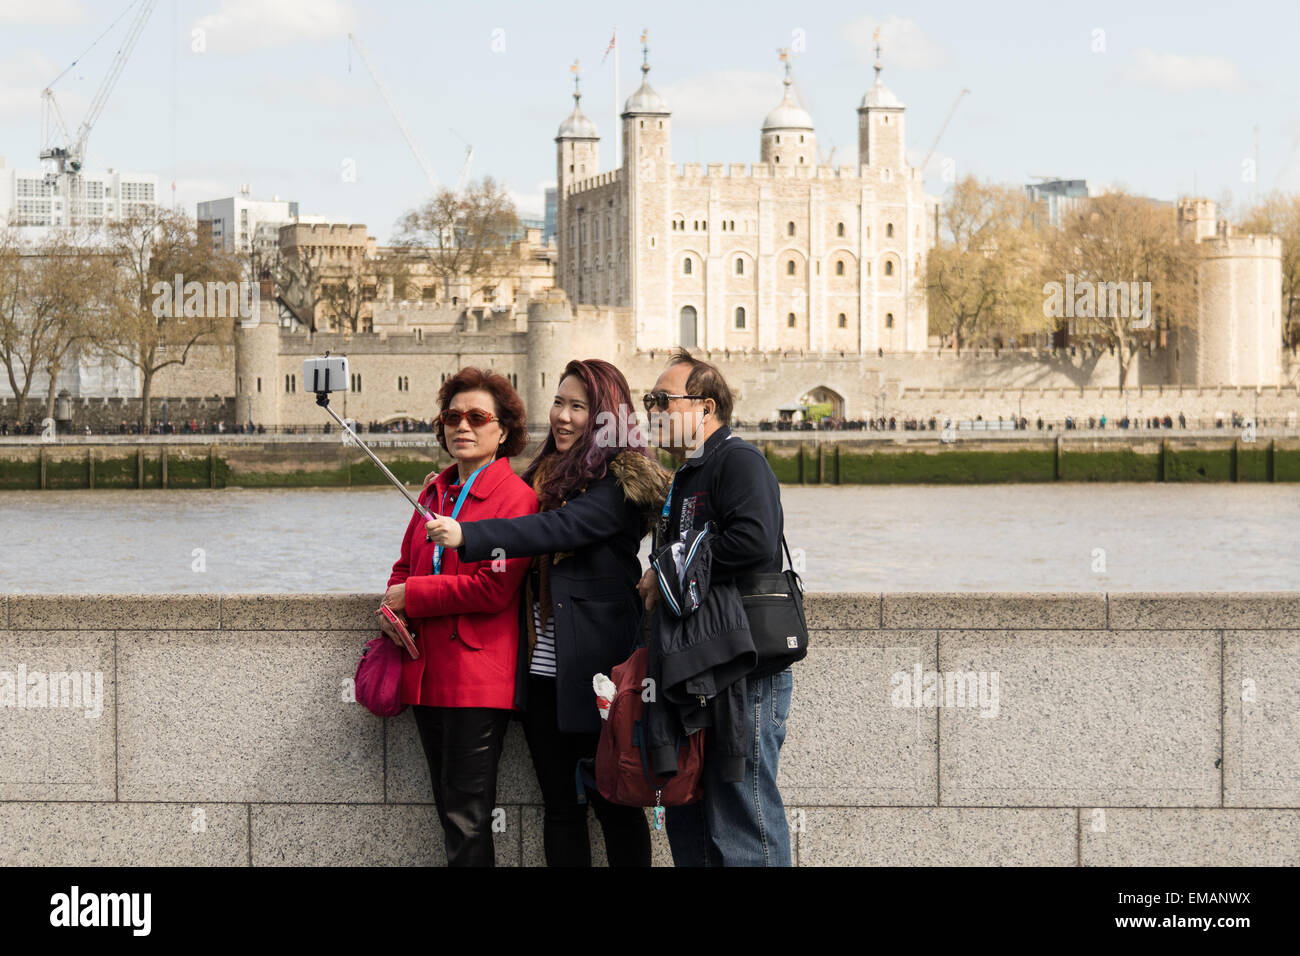 Londres, Royaume-Uni. 18 avril, 2015. Les touristes prendre une photographie à l'aide d'un bâton selfies en face de la Tour de Londres au cours du printemps ensoleillé météo à Londres. Credit : Londres pix/Alamy Live News Banque D'Images